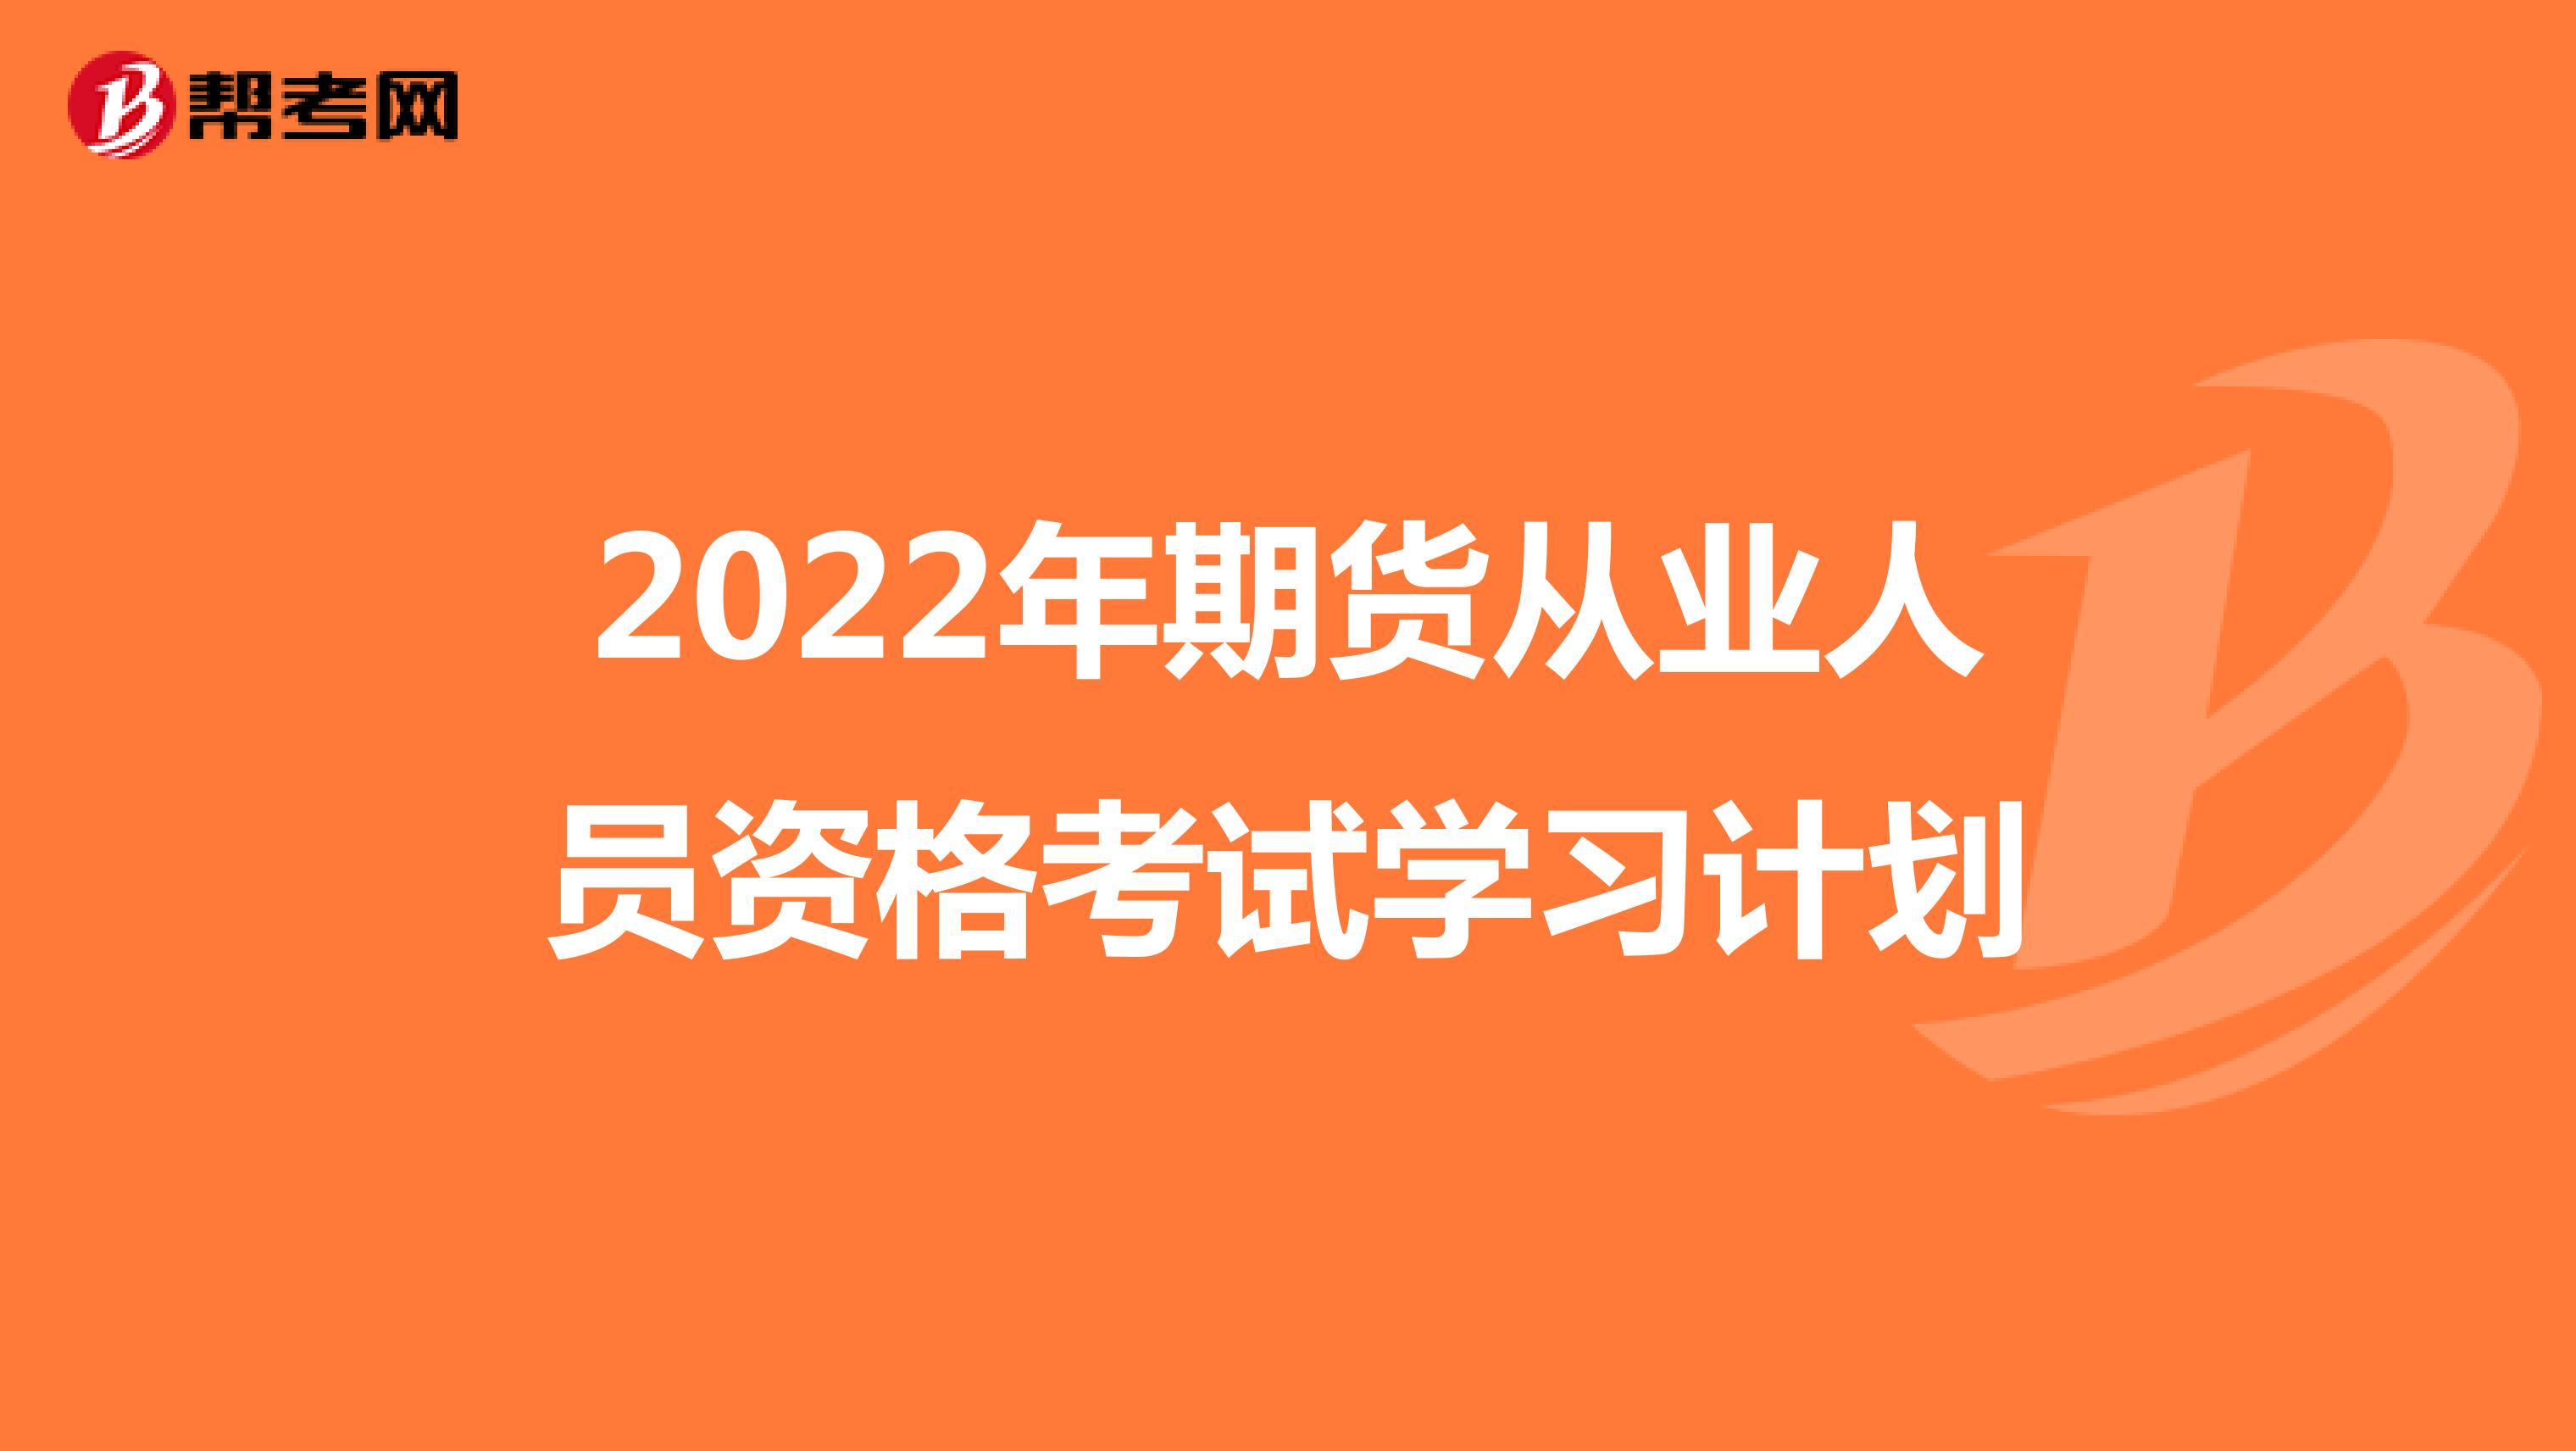 2022年期货从业人员资格考试学习计划